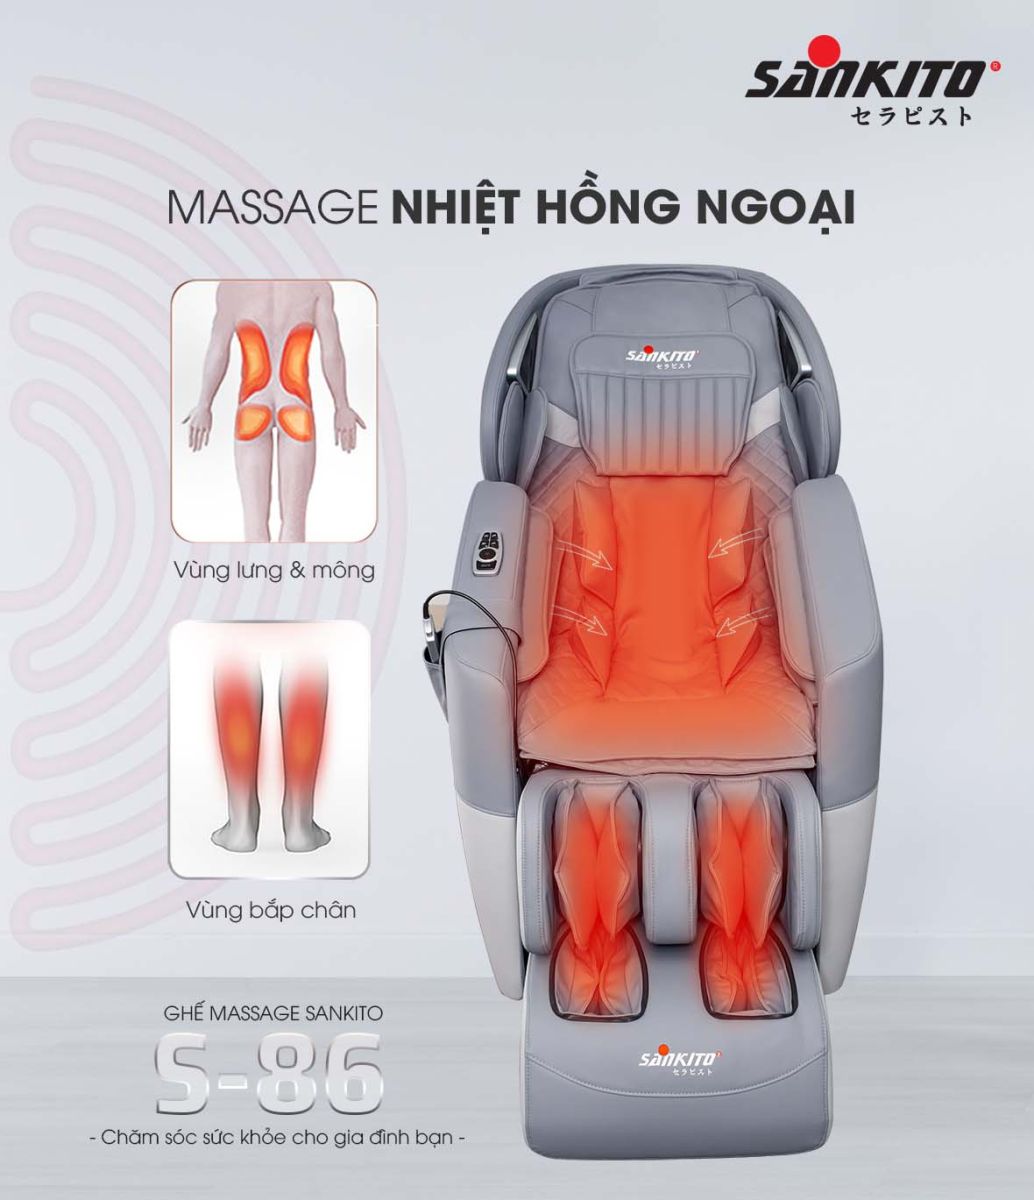 Ghế Massage toàn thân Sankito S-86